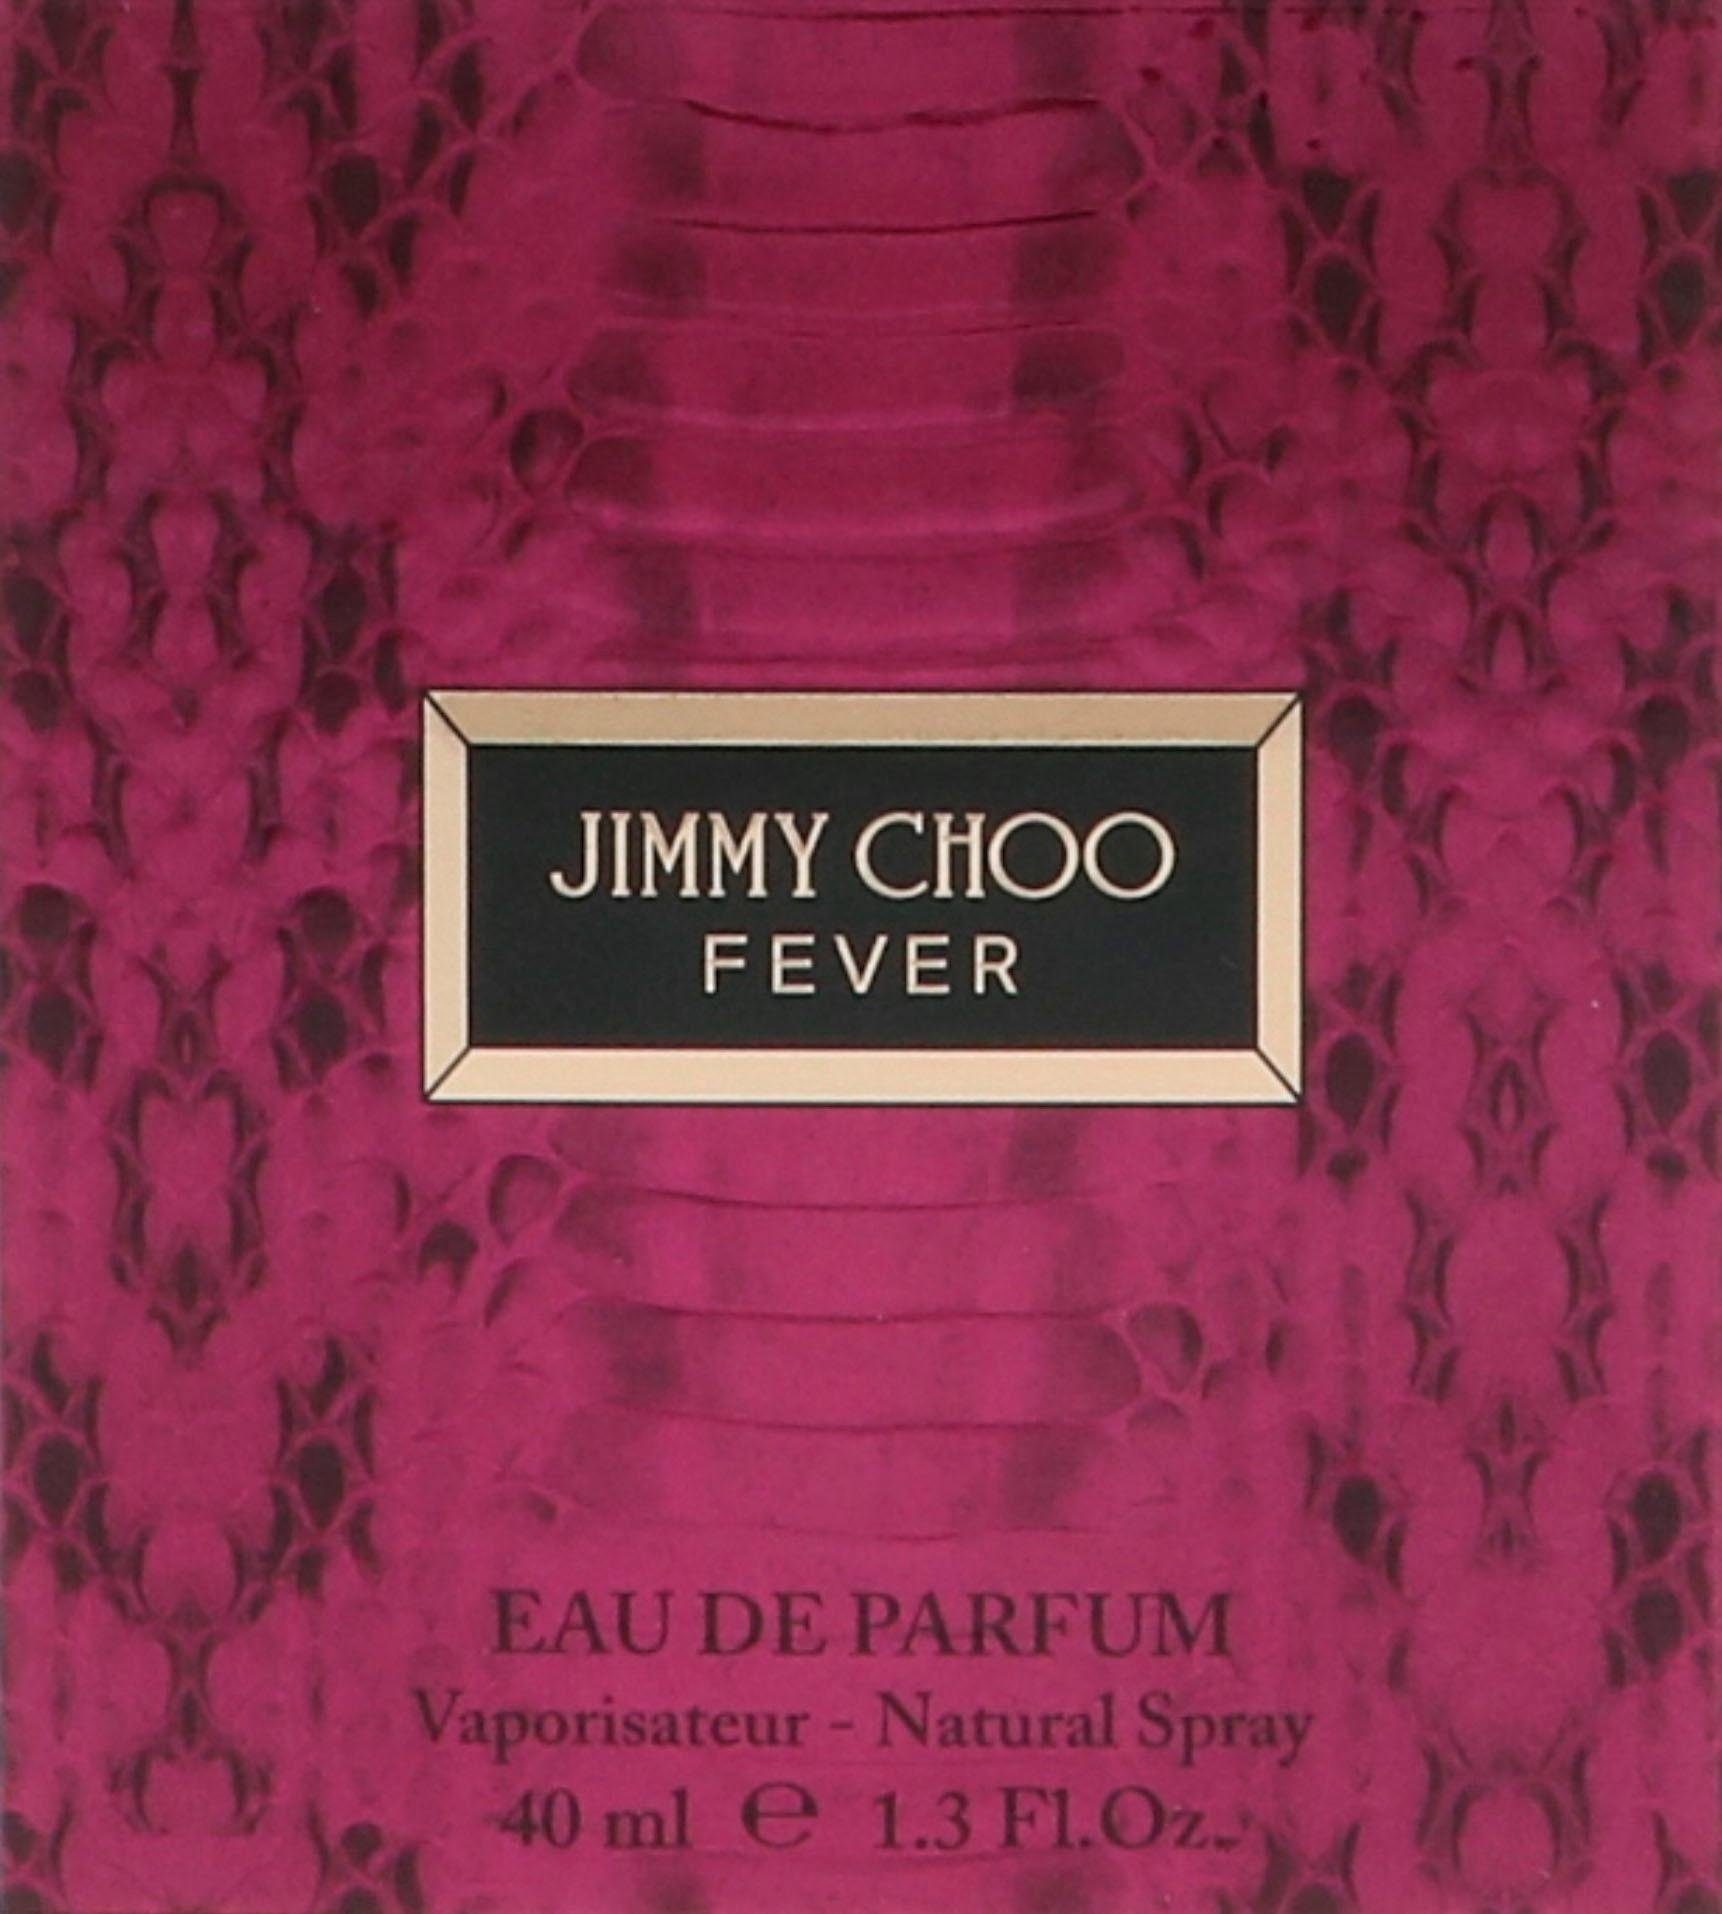 JIMMY CHOO Fever Parfum de Eau